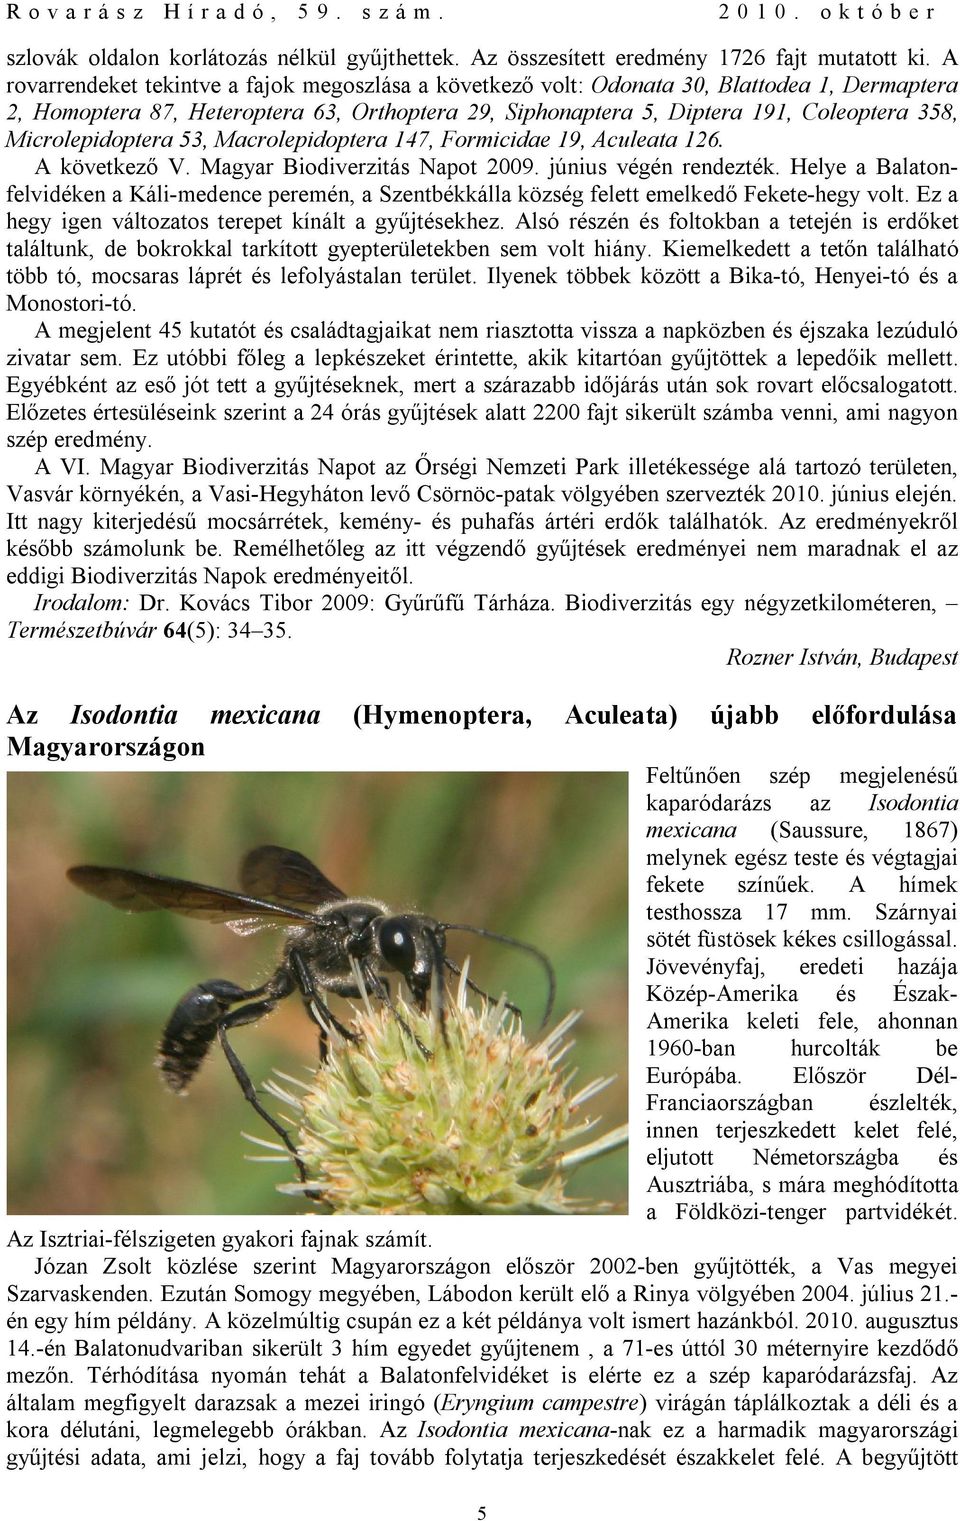 Microlepidoptera 53, Macrolepidoptera 147, Formicidae 19, Aculeata 126. A következő V. Magyar Biodiverzitás Napot 2009. június végén rendezték.